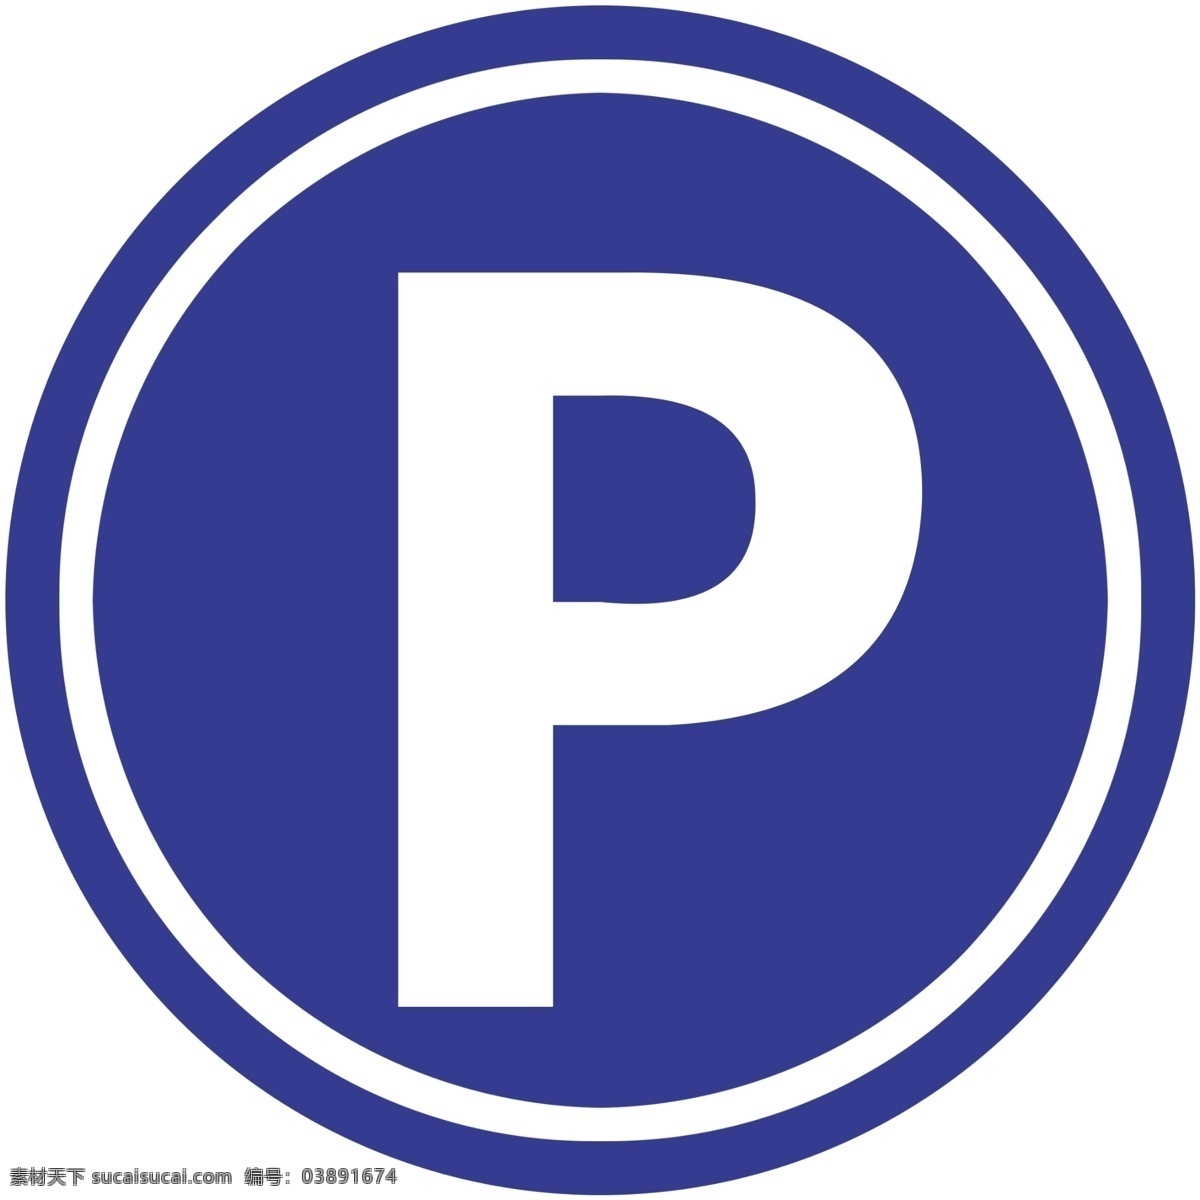 停车标图片 停车场标志 标志素材 停车场 标志